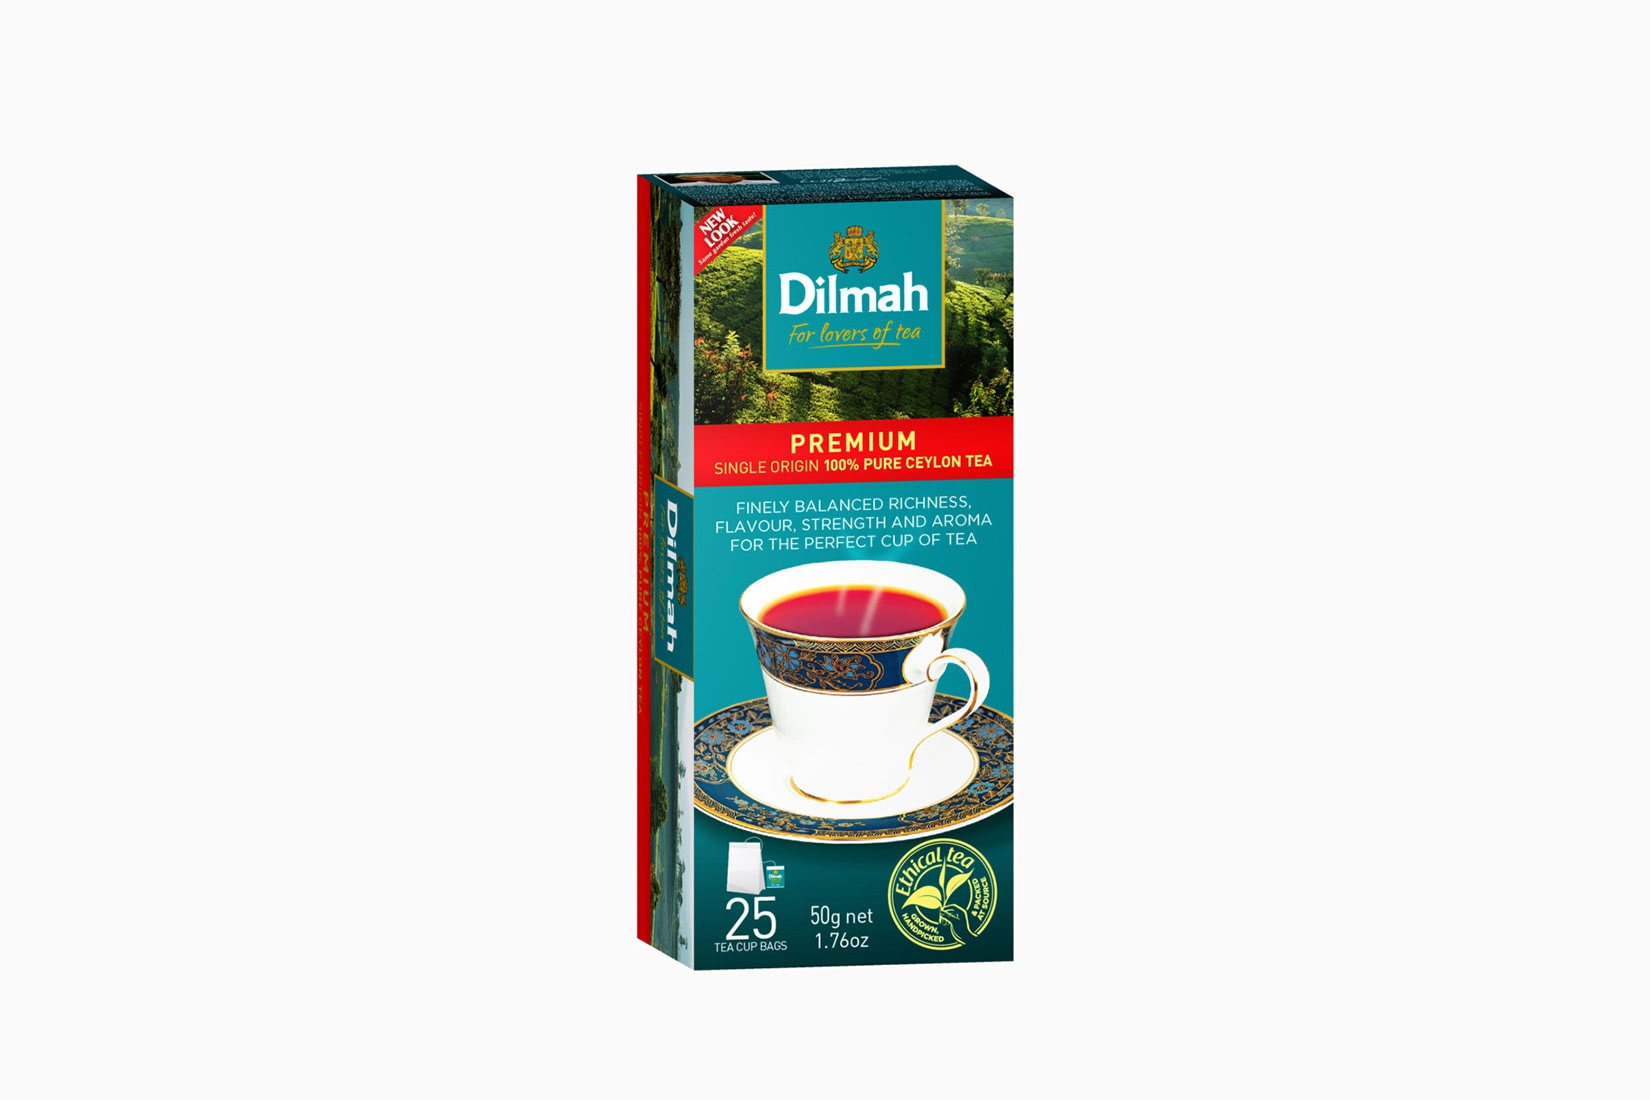 meilleures marques de thé dilmah premium ceylon - Luxe Digital